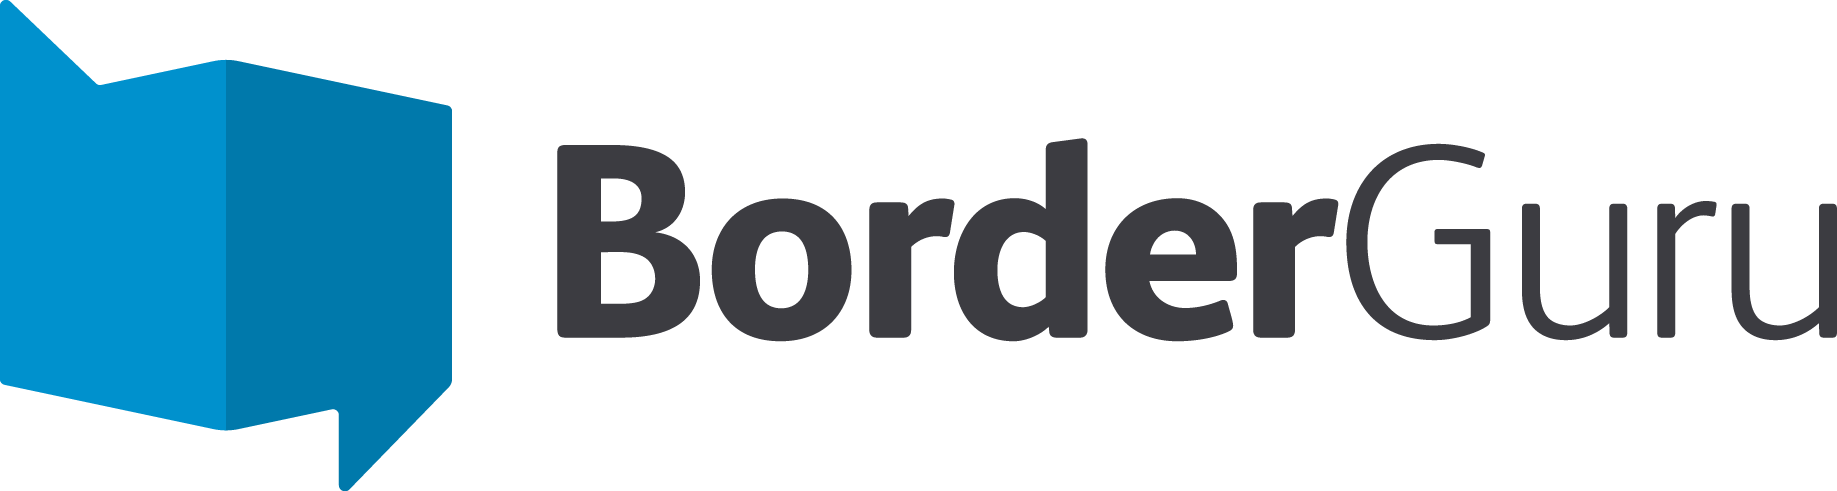 Billede af border guru logo